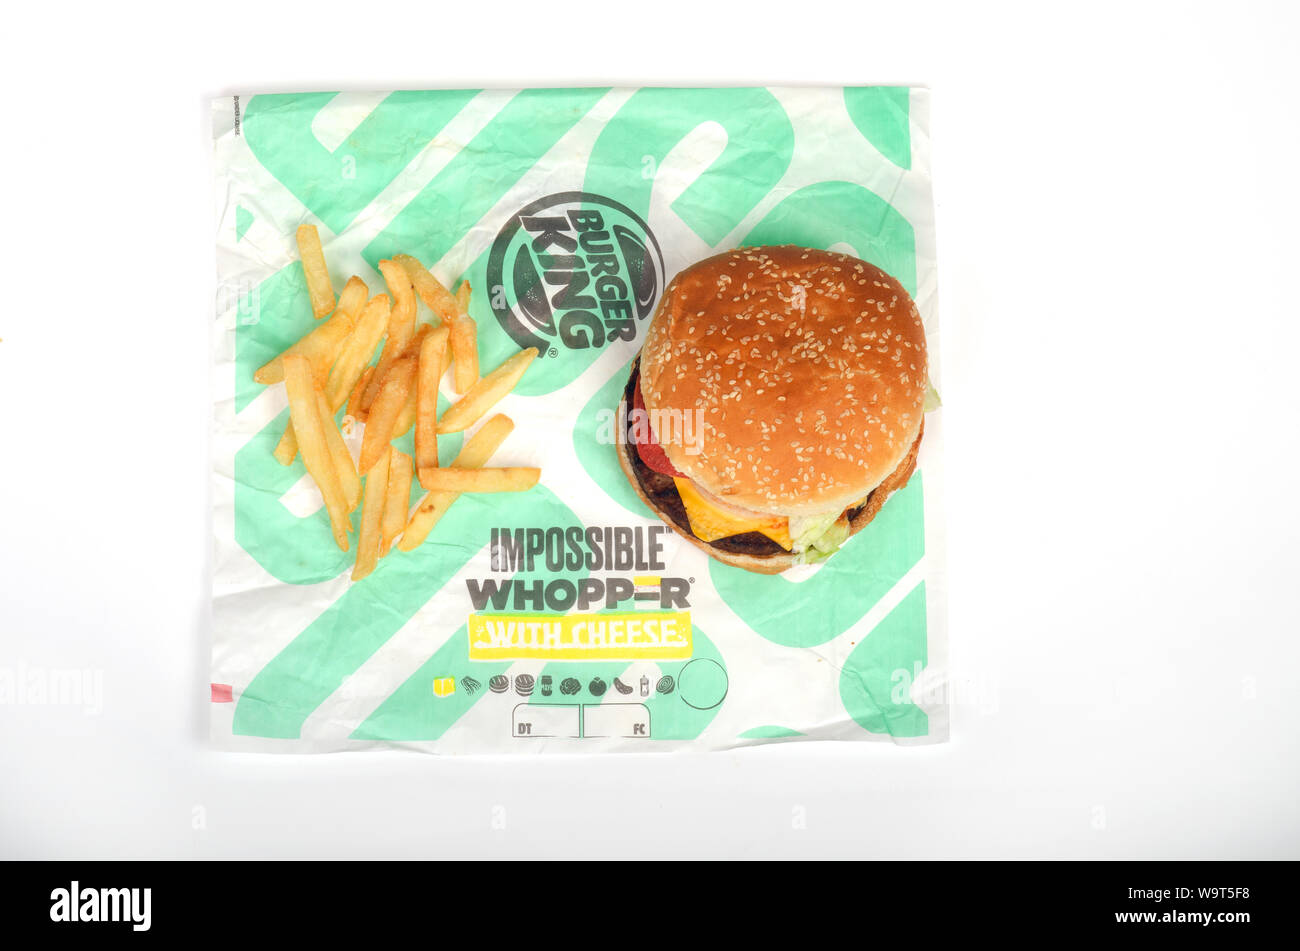 Burger King unmöglich Whopper mit Käse und Pommes frites auf Wrapper, Vegetarisch, fleischlos, auf pflanzlicher Basis Sandwich Stockfoto